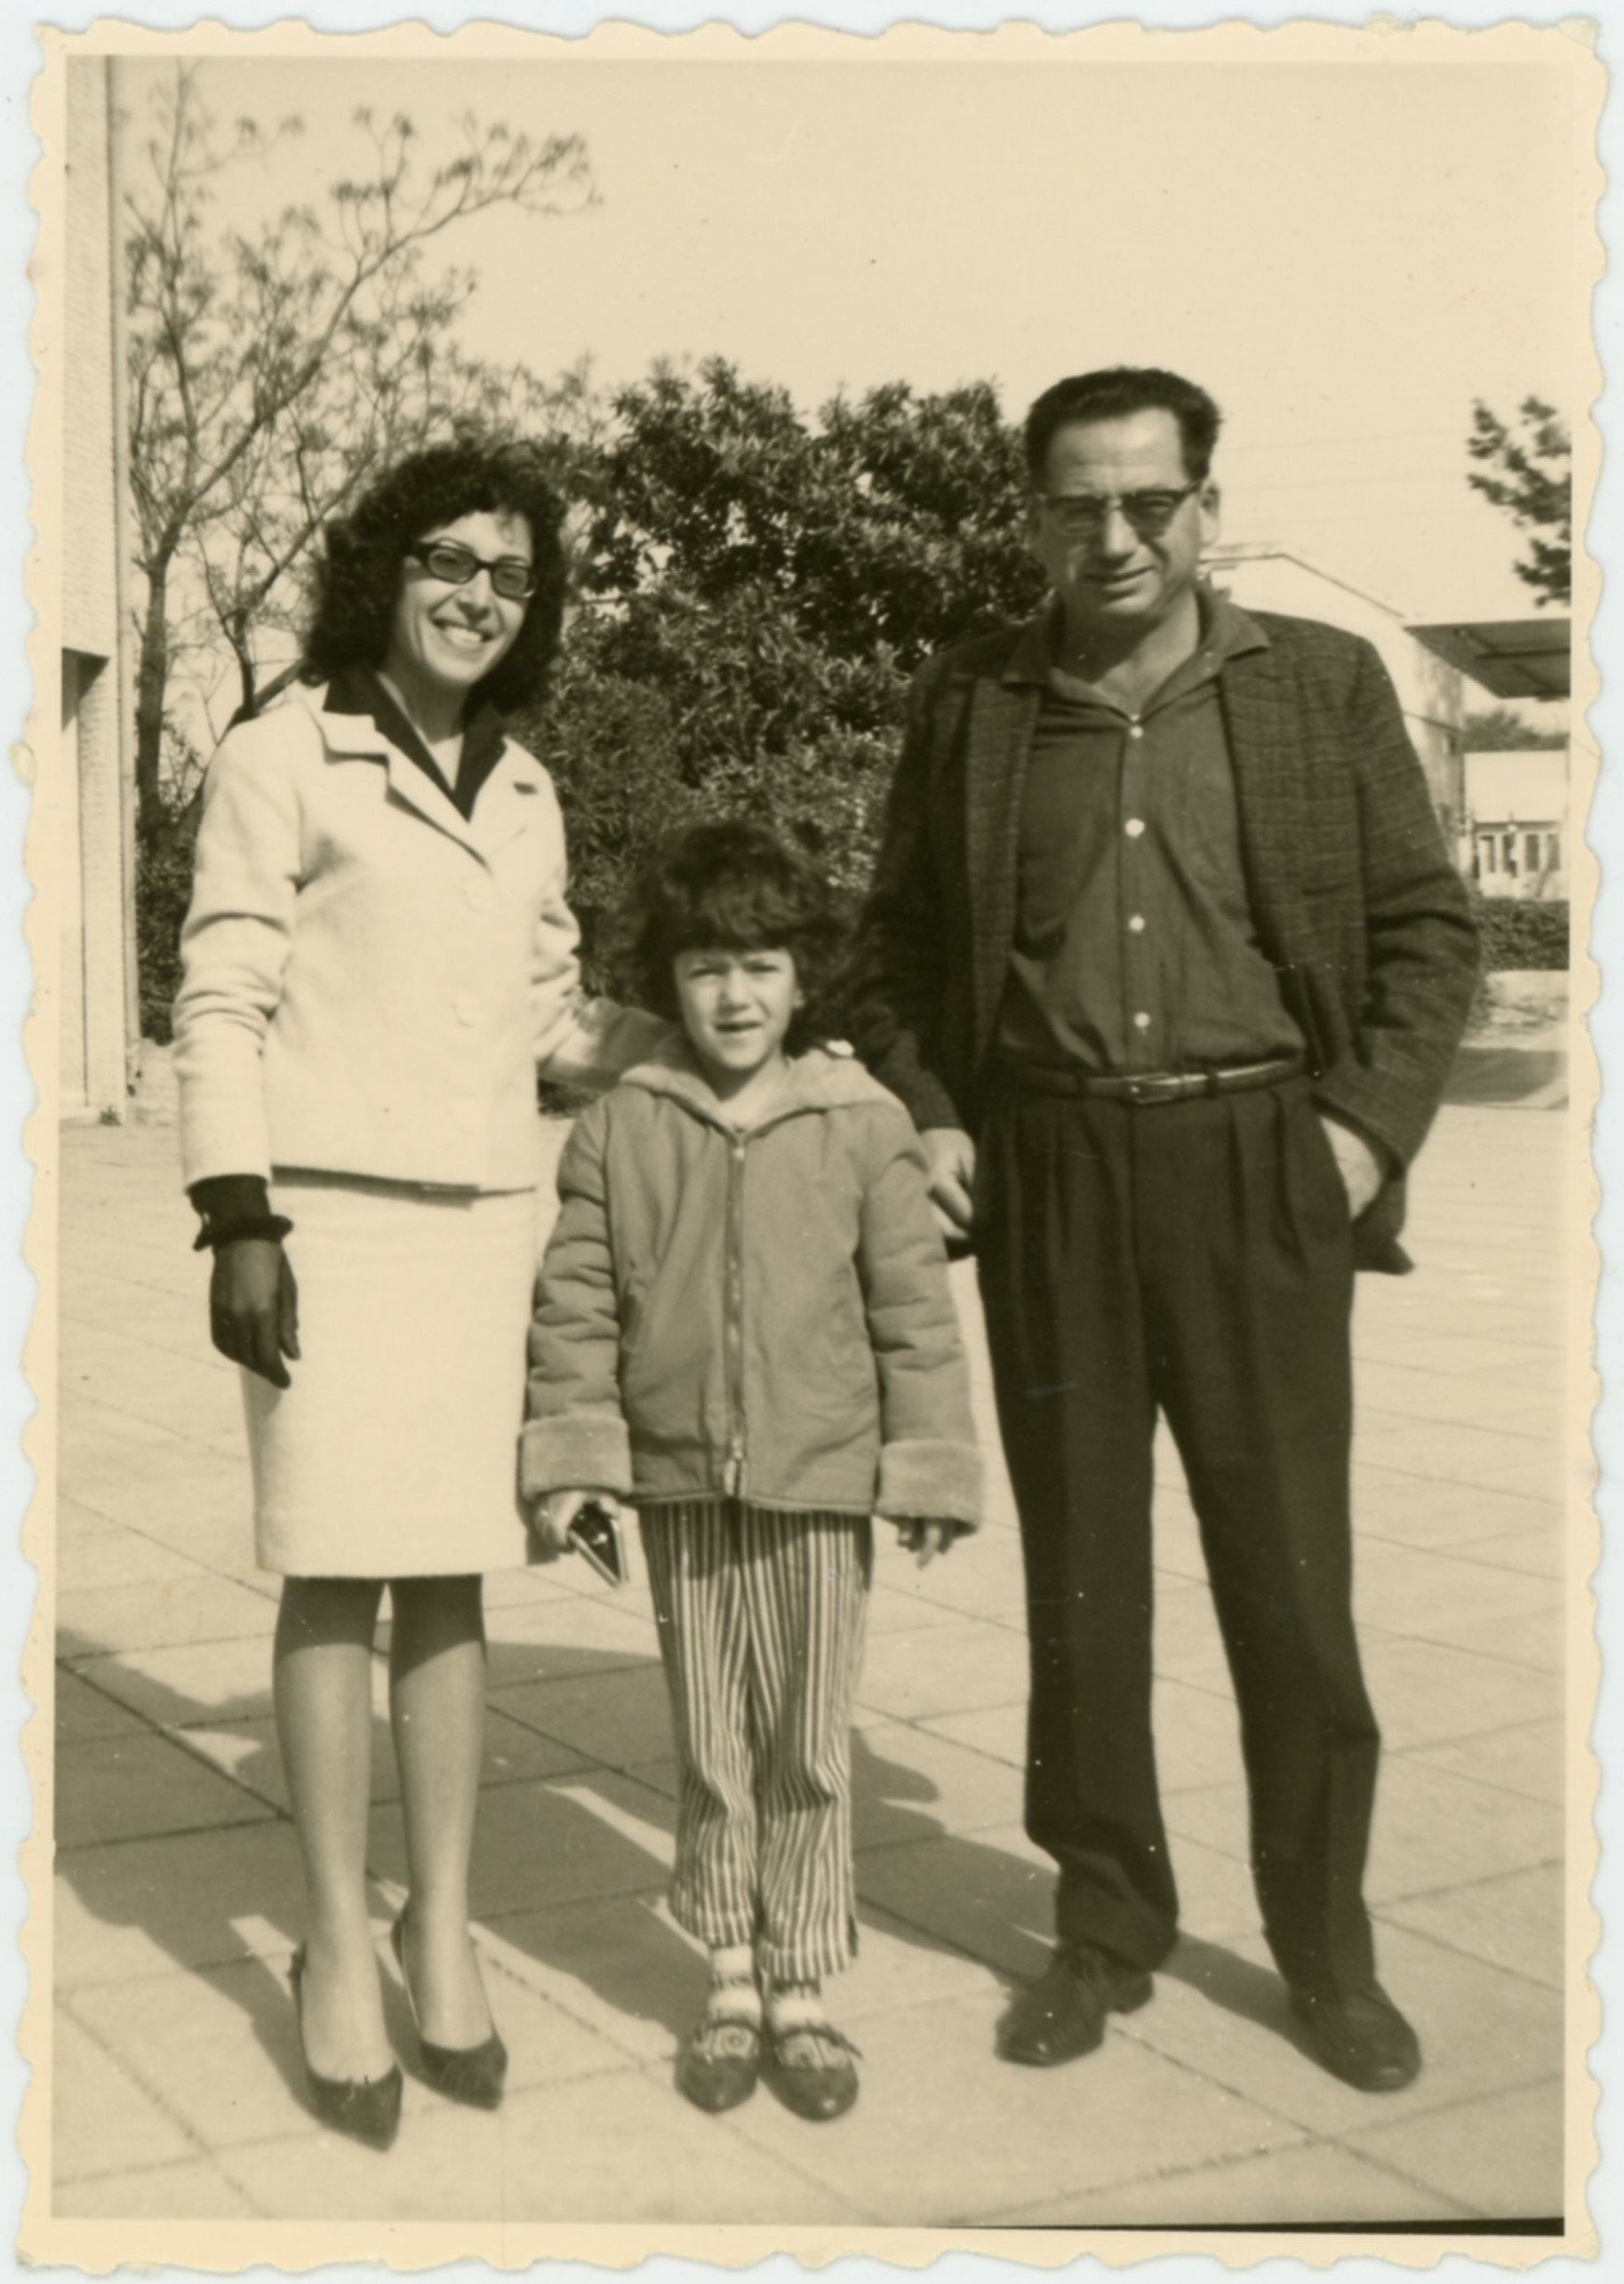 זאב ובתיה איצקוביץ עם בתם רחלה, ברחוב בר אילן, שנות ה-60